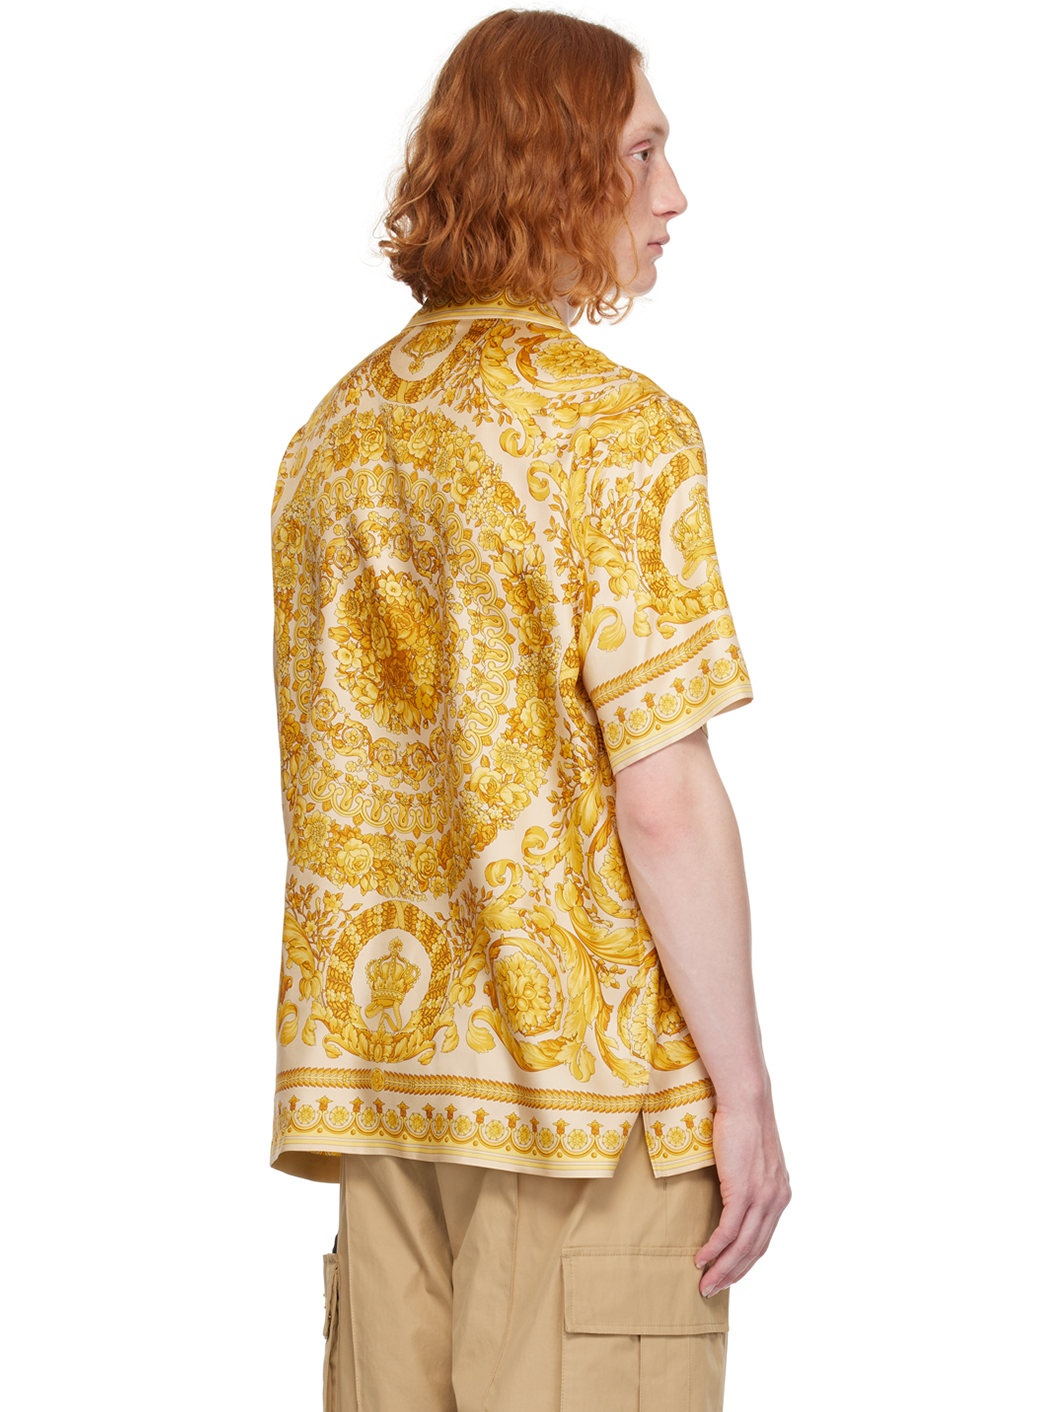 Beige & Yellow Barocco Shirt - 3